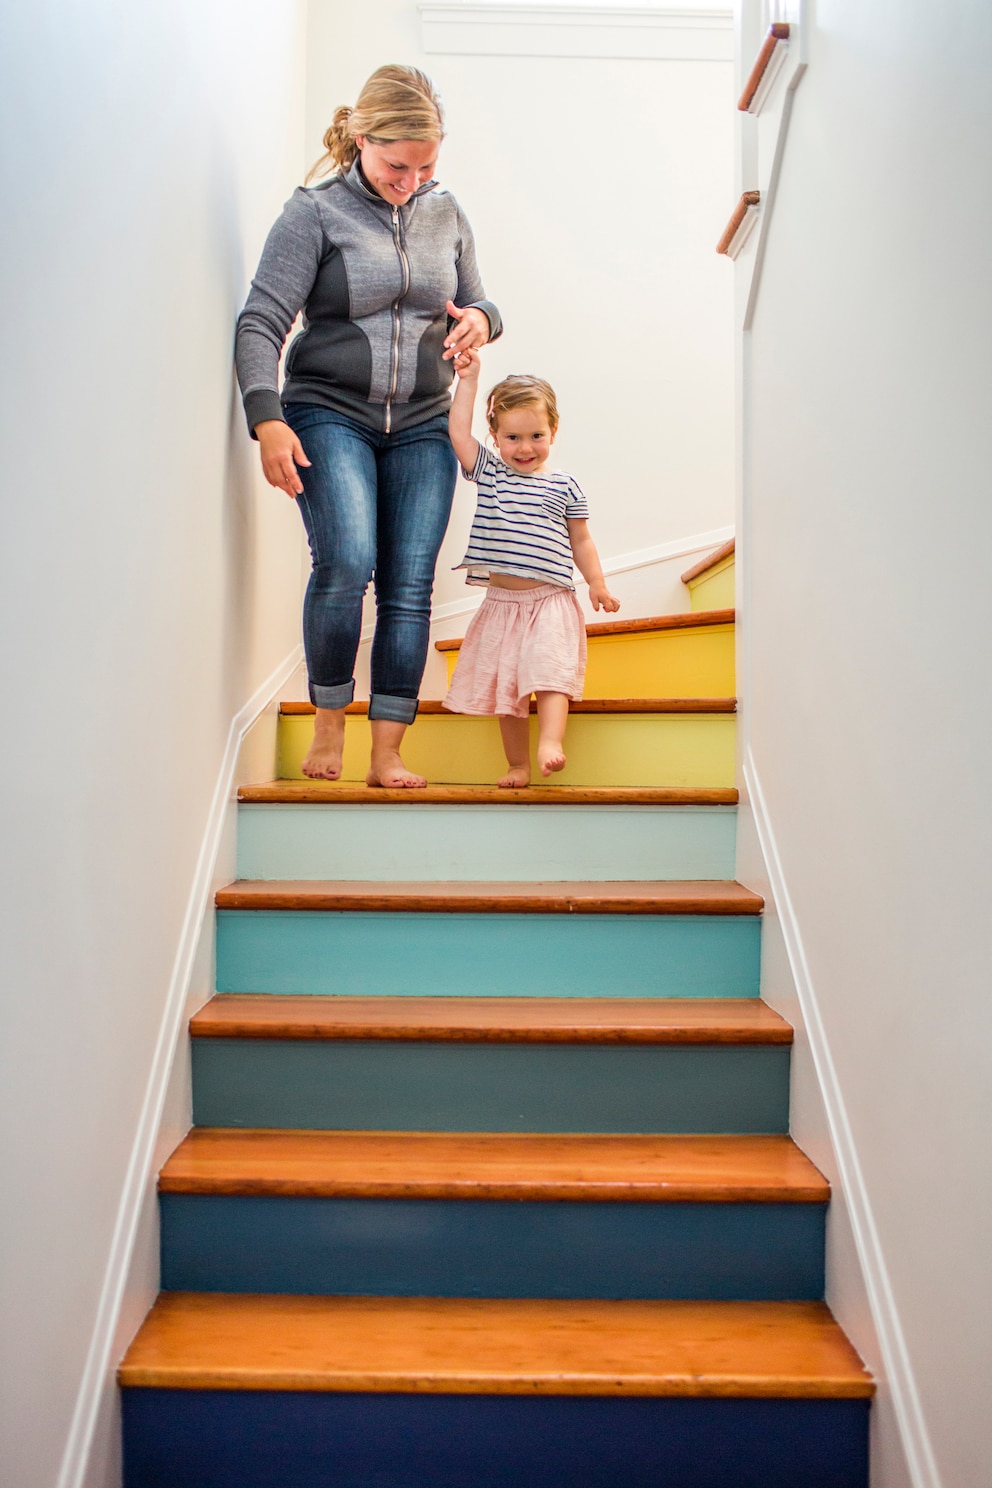 Treppen wohnlicher gestalten, indem man die Stufen färbt